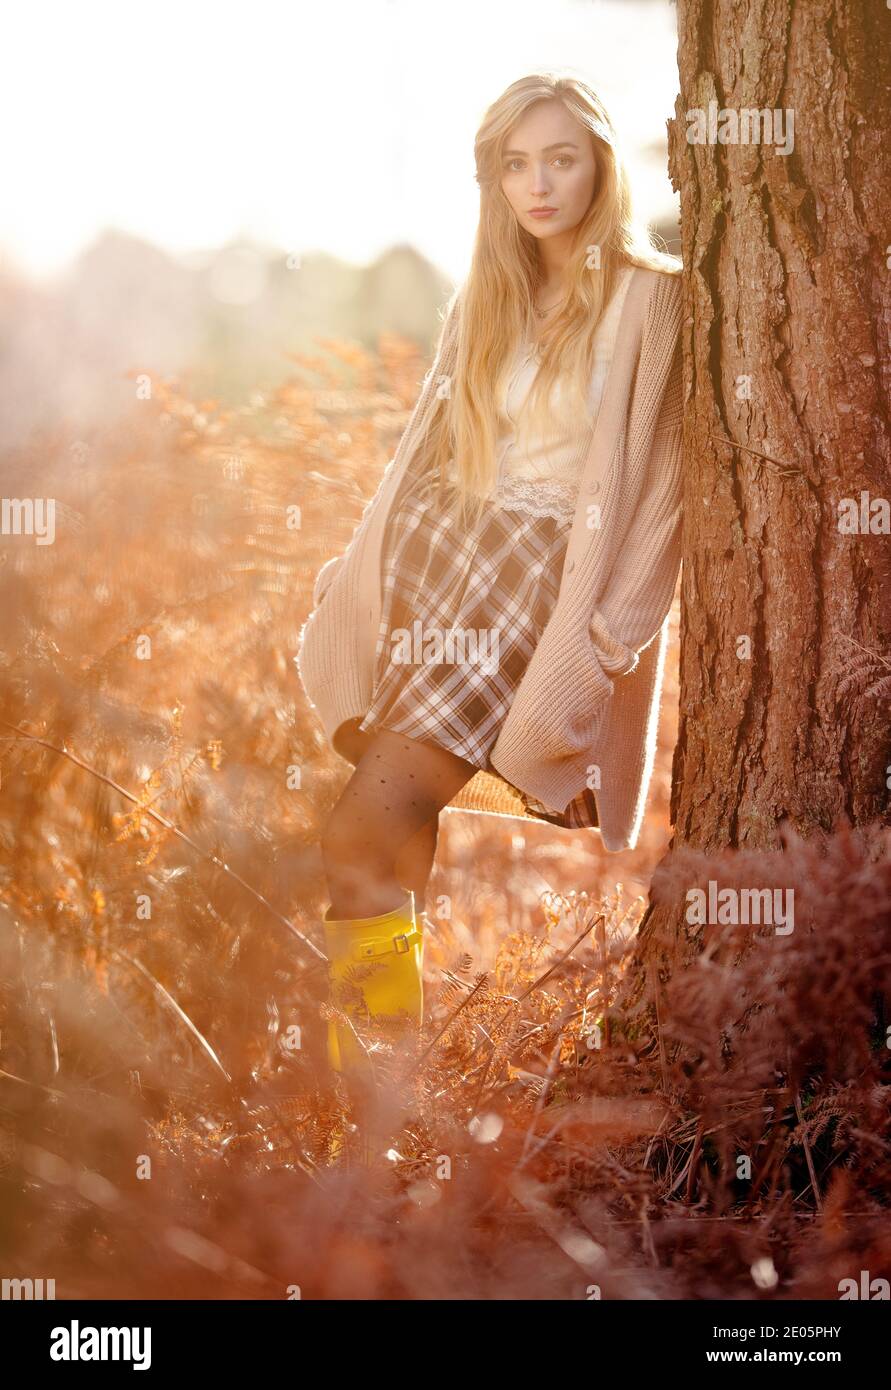 Eine junge schöne Frau (20) verträumte redaktionelle Mode aufgenommen Ein warmer Herbstwald mit Strickjacke und Tartan Rock mit langen blonden Haaren Stockfoto